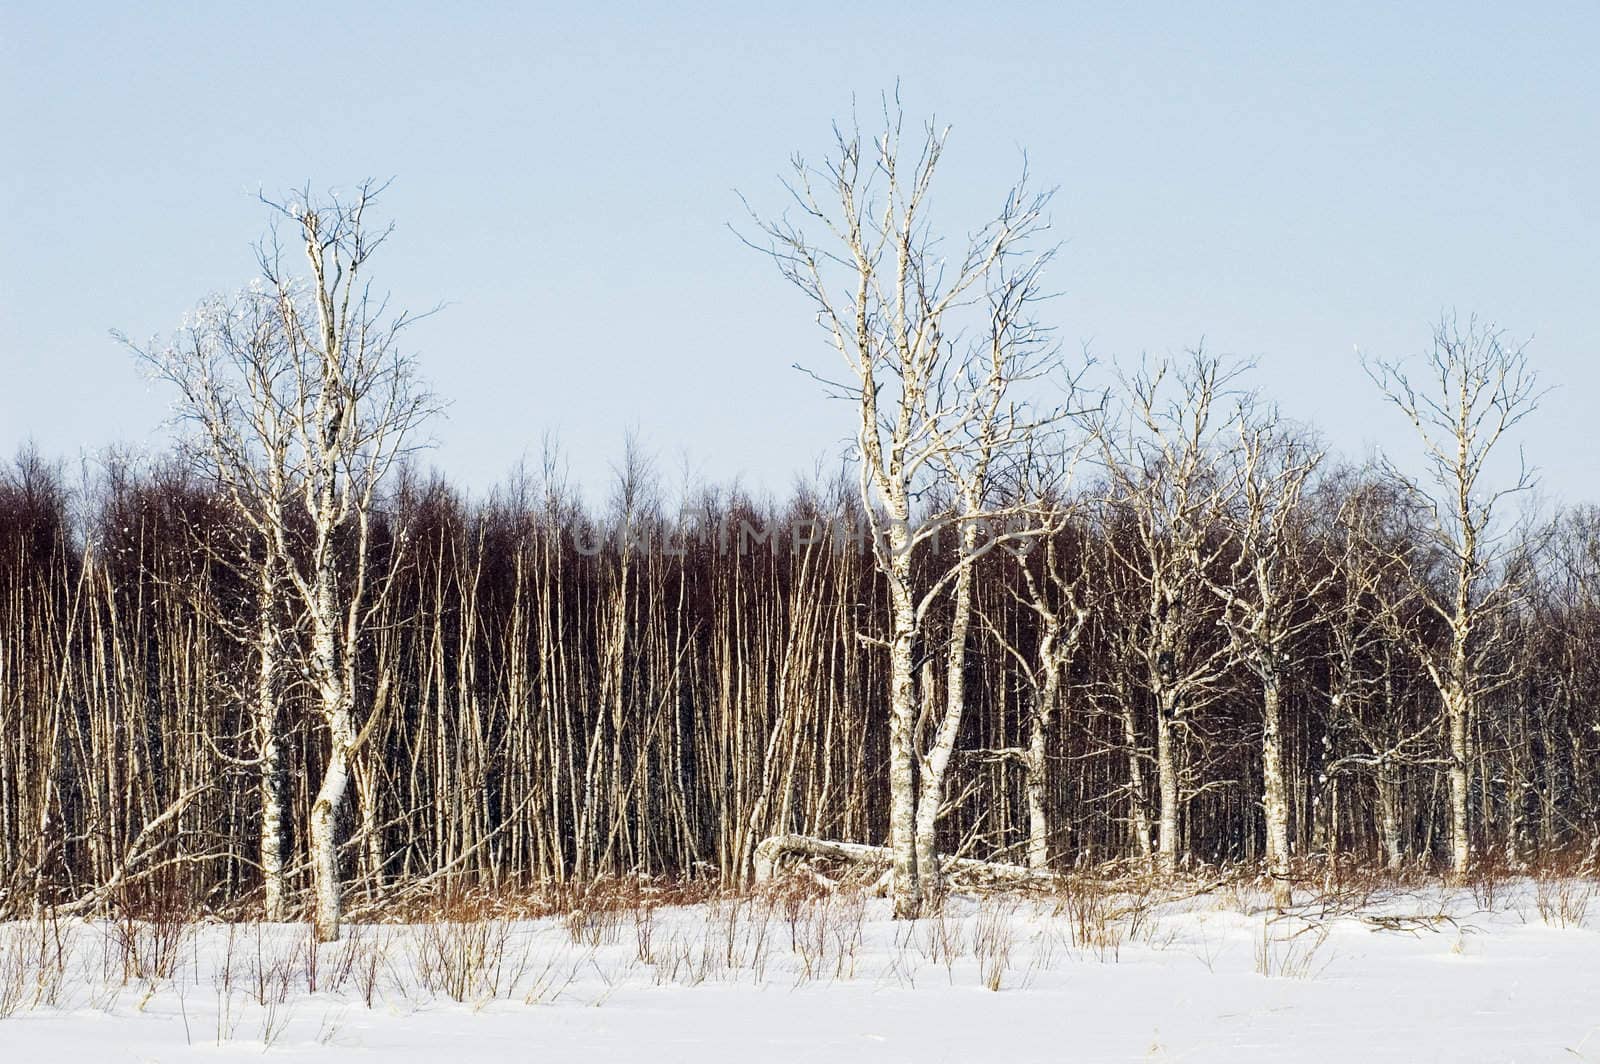 Birchwood in the winter. Russia.Islands in Ladoga Lake.